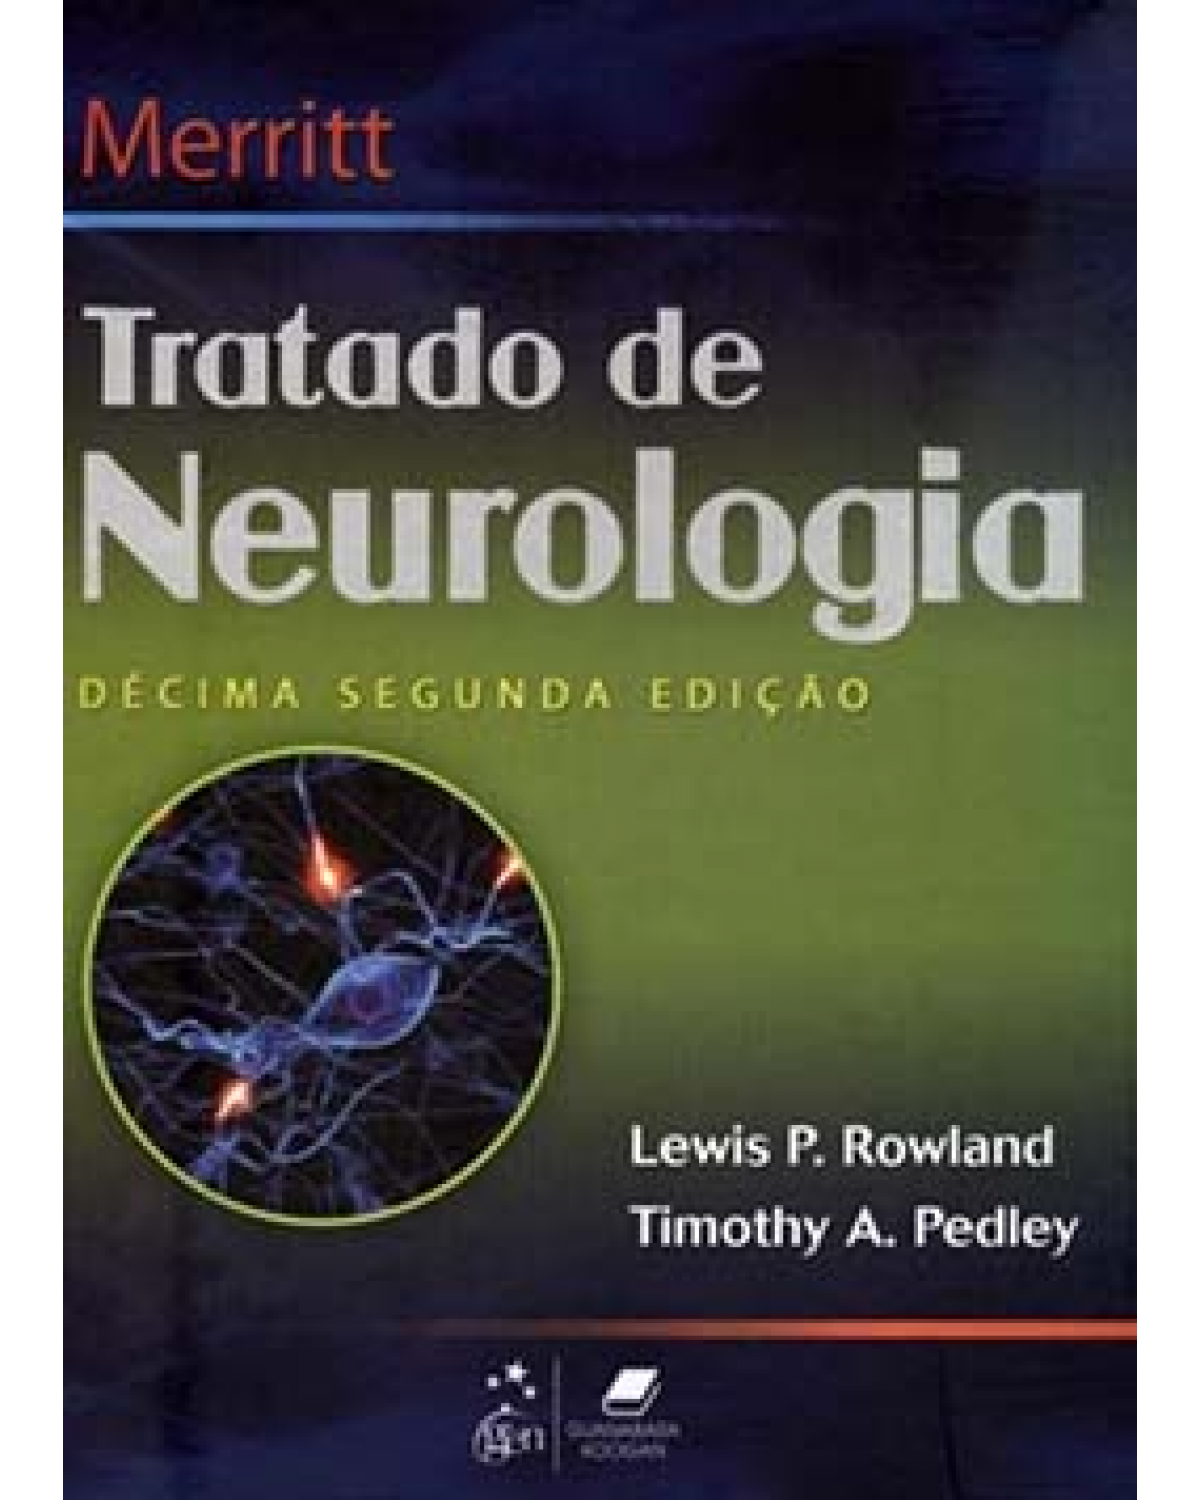 Merritt - Tratado de neurologia - 12ª Edição | 2011